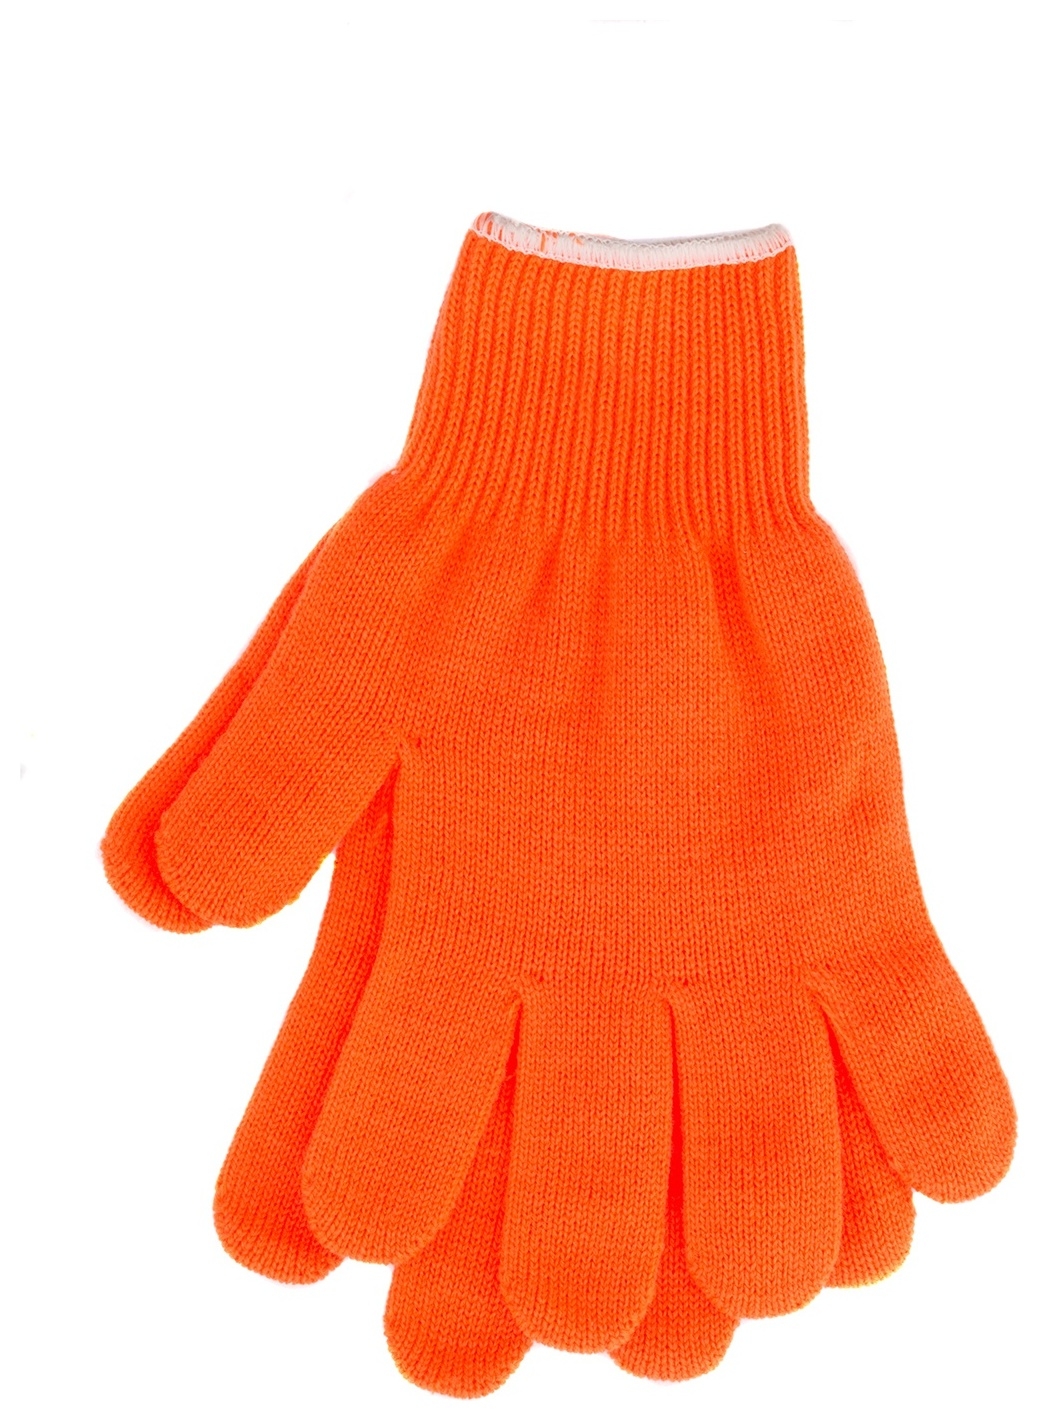 Перчатки трикотажные, акрил, оранжевый, оверлок россия